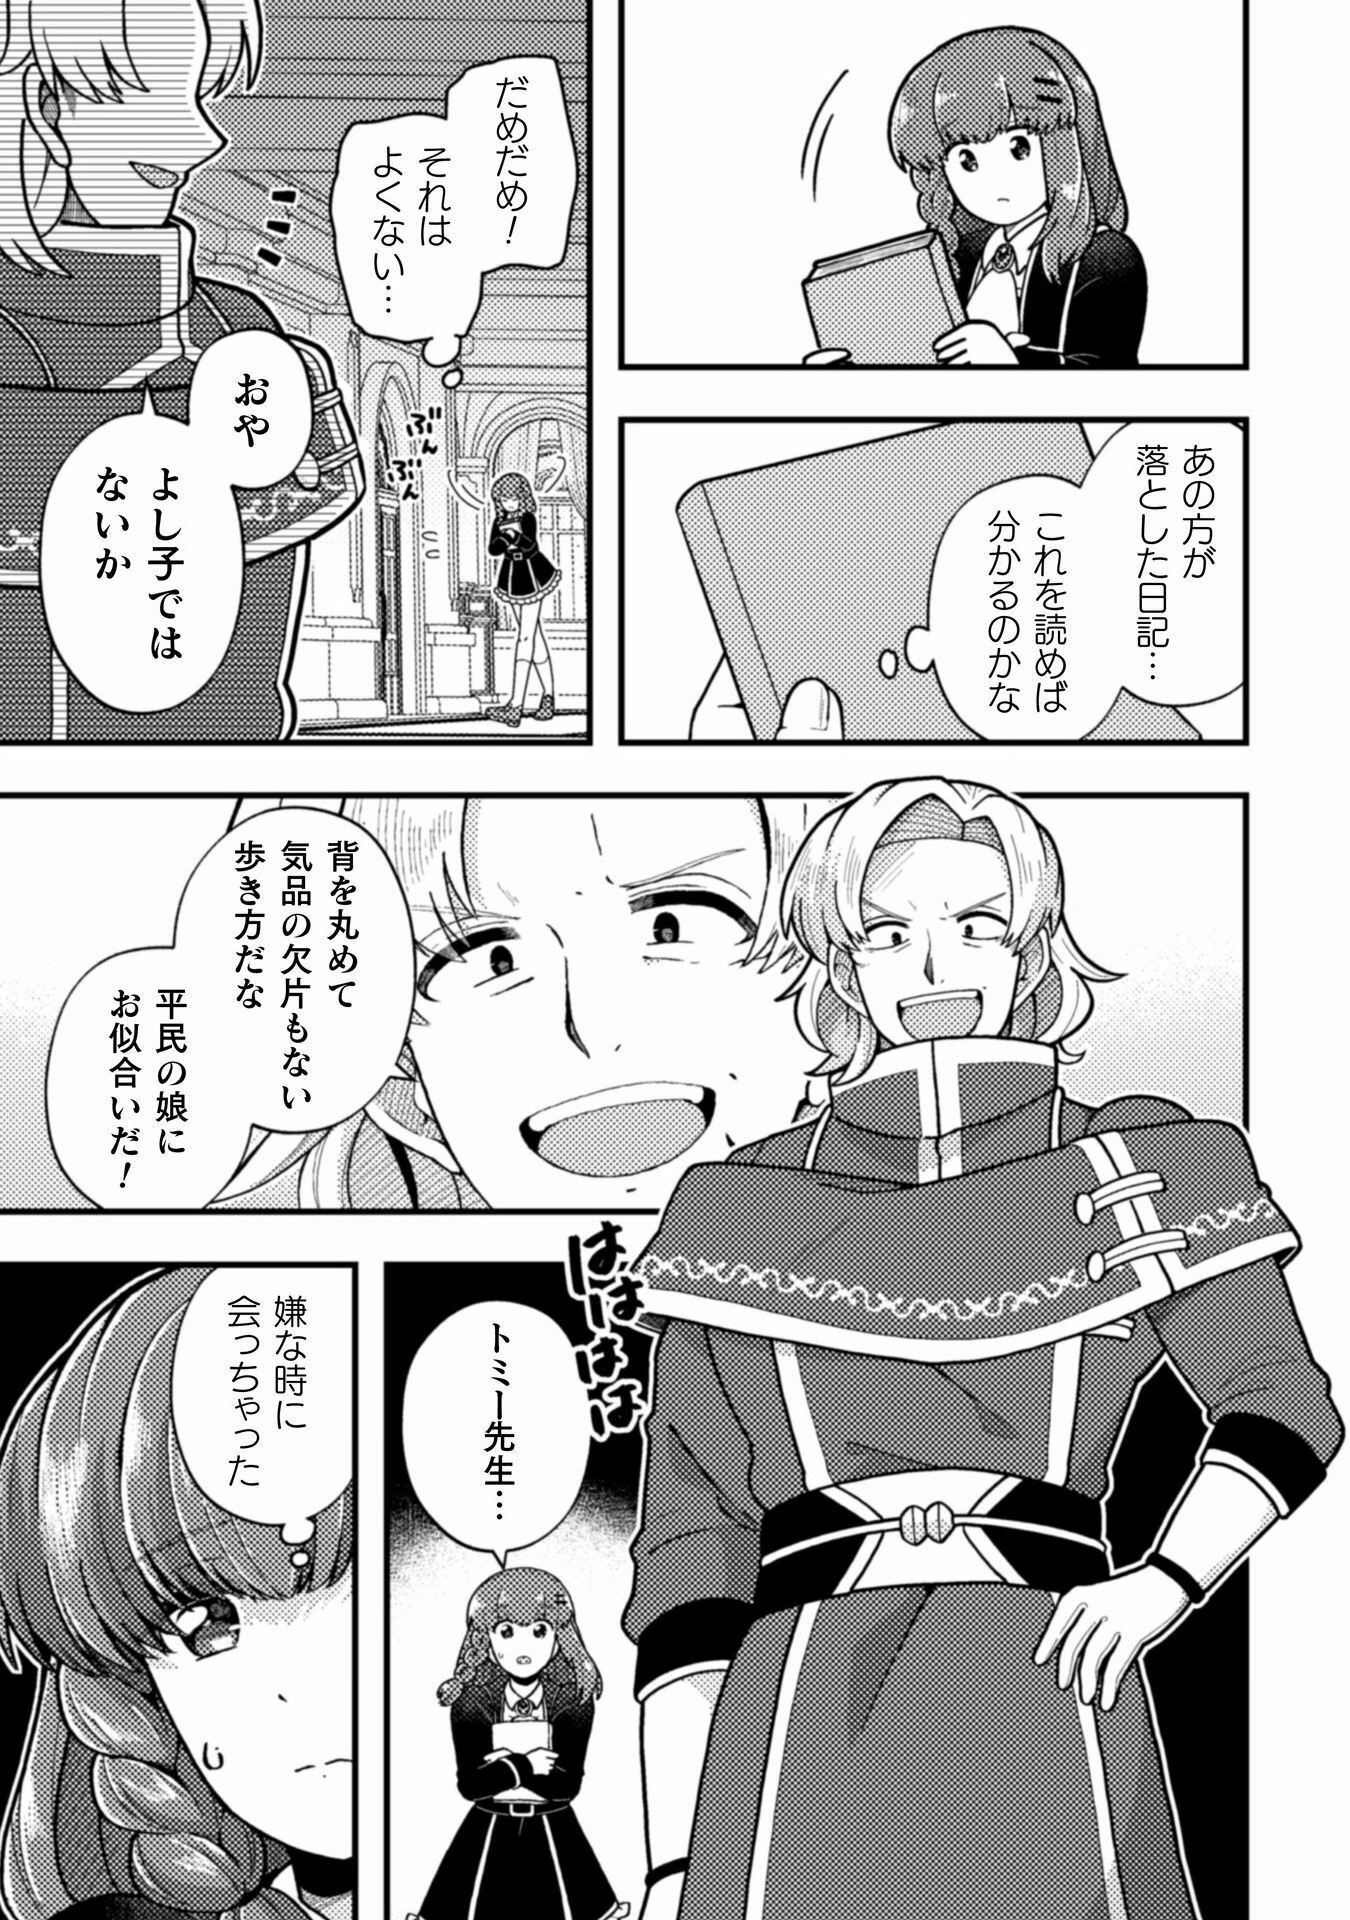 Otome Game no Akuyaku Reijou ni Tensei shitakedo Follower ga Fukyoushiteta Chisiki shikanai - Chapter 21 - Page 25